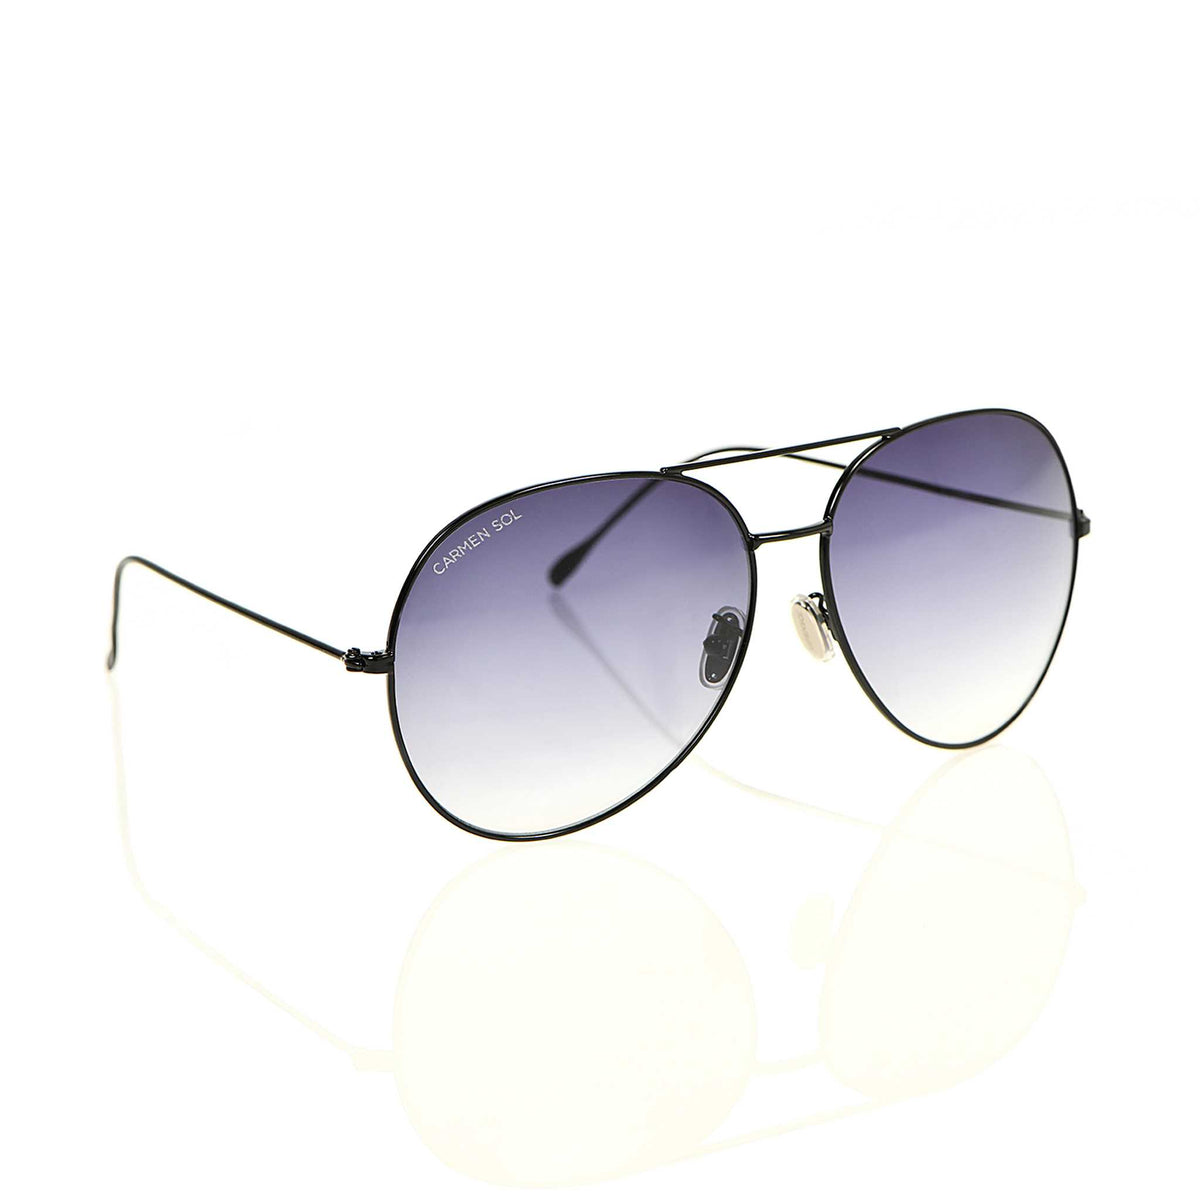 Black aviator sunglasses with gradient lenses 